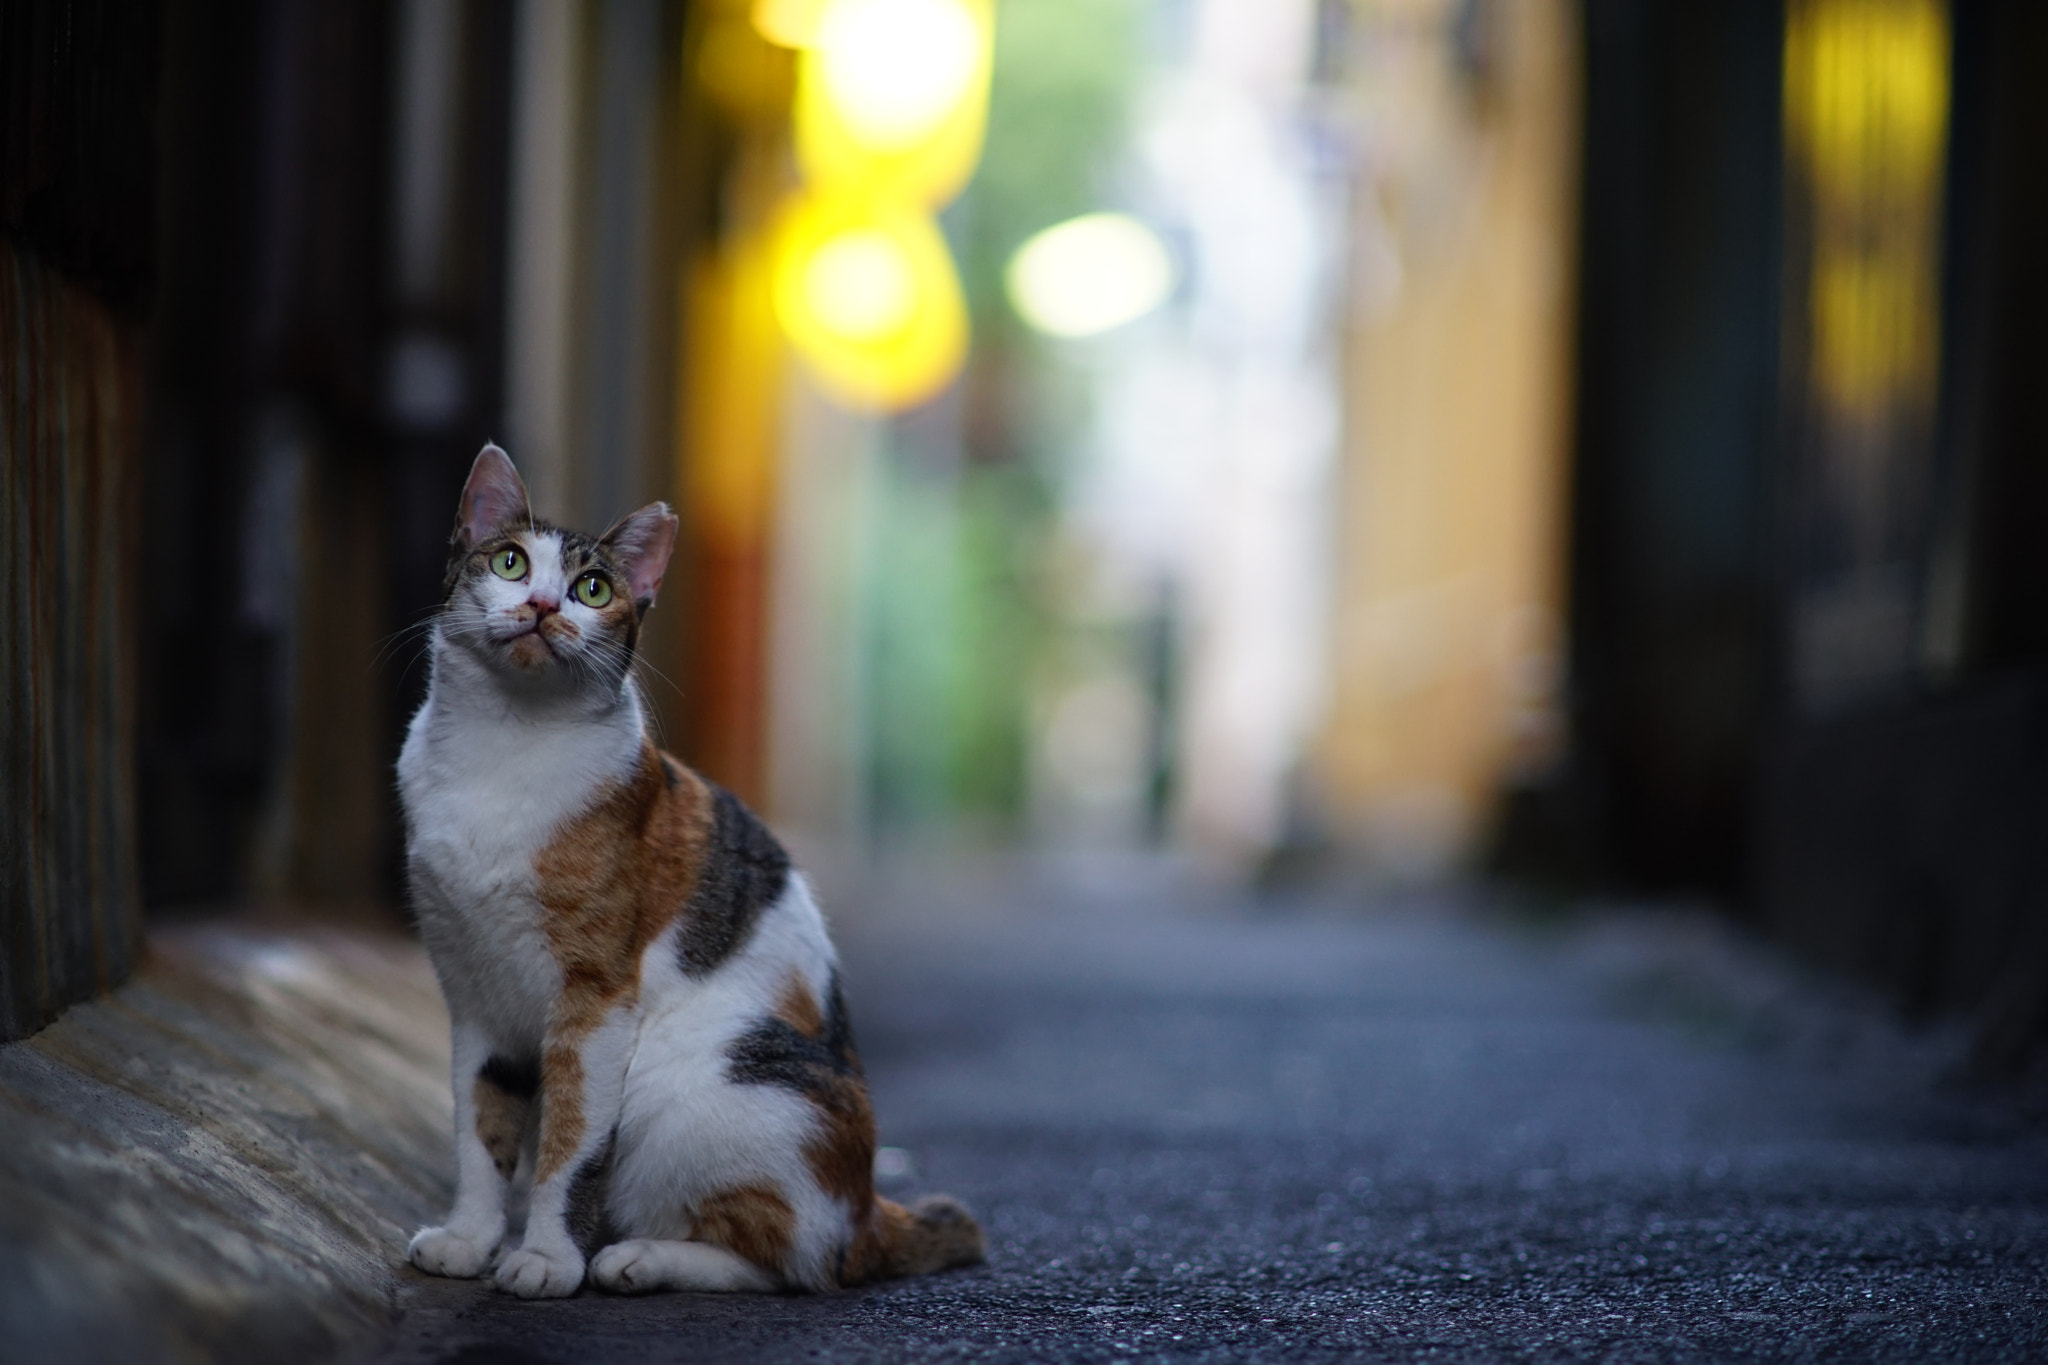 Minolta AF 85mm F1.4 G (D) sample photo. Beppu city cat photography